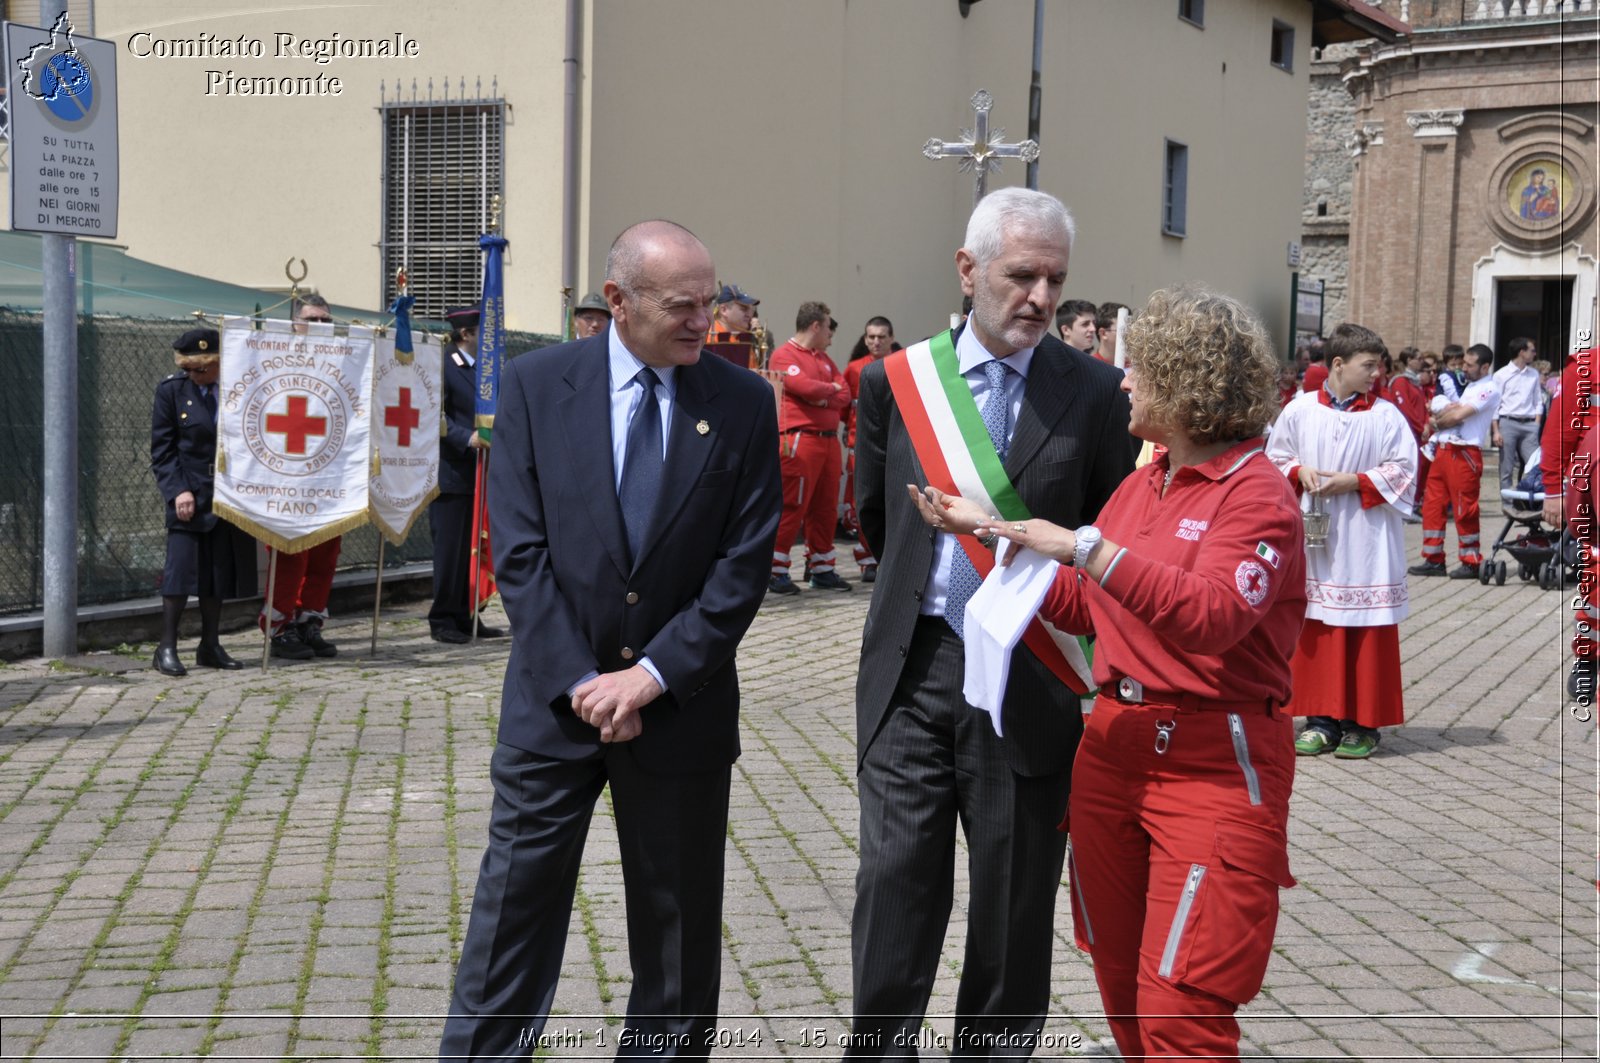 Mathi 1 Giugno 2014 - 15 anni dalla fondazione - Comitato Regionale del Piemonte